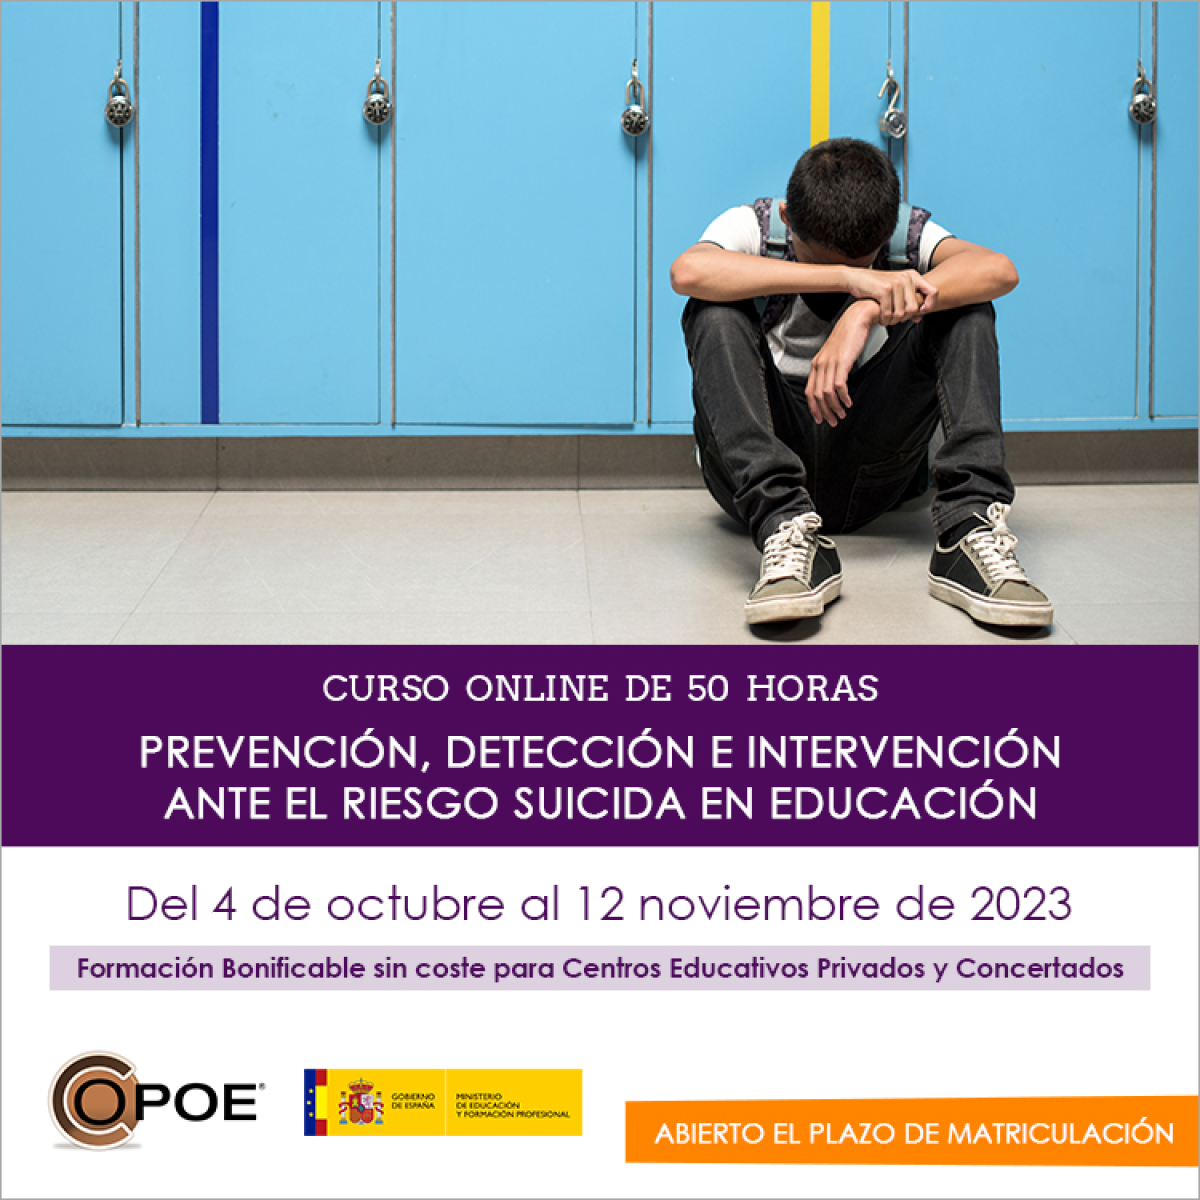 Curso online de COPOE &quot;Prevención, detección e intervención ante el riesgo suicida en educación”, del 4 de octubre al 12 noviembre de 2023